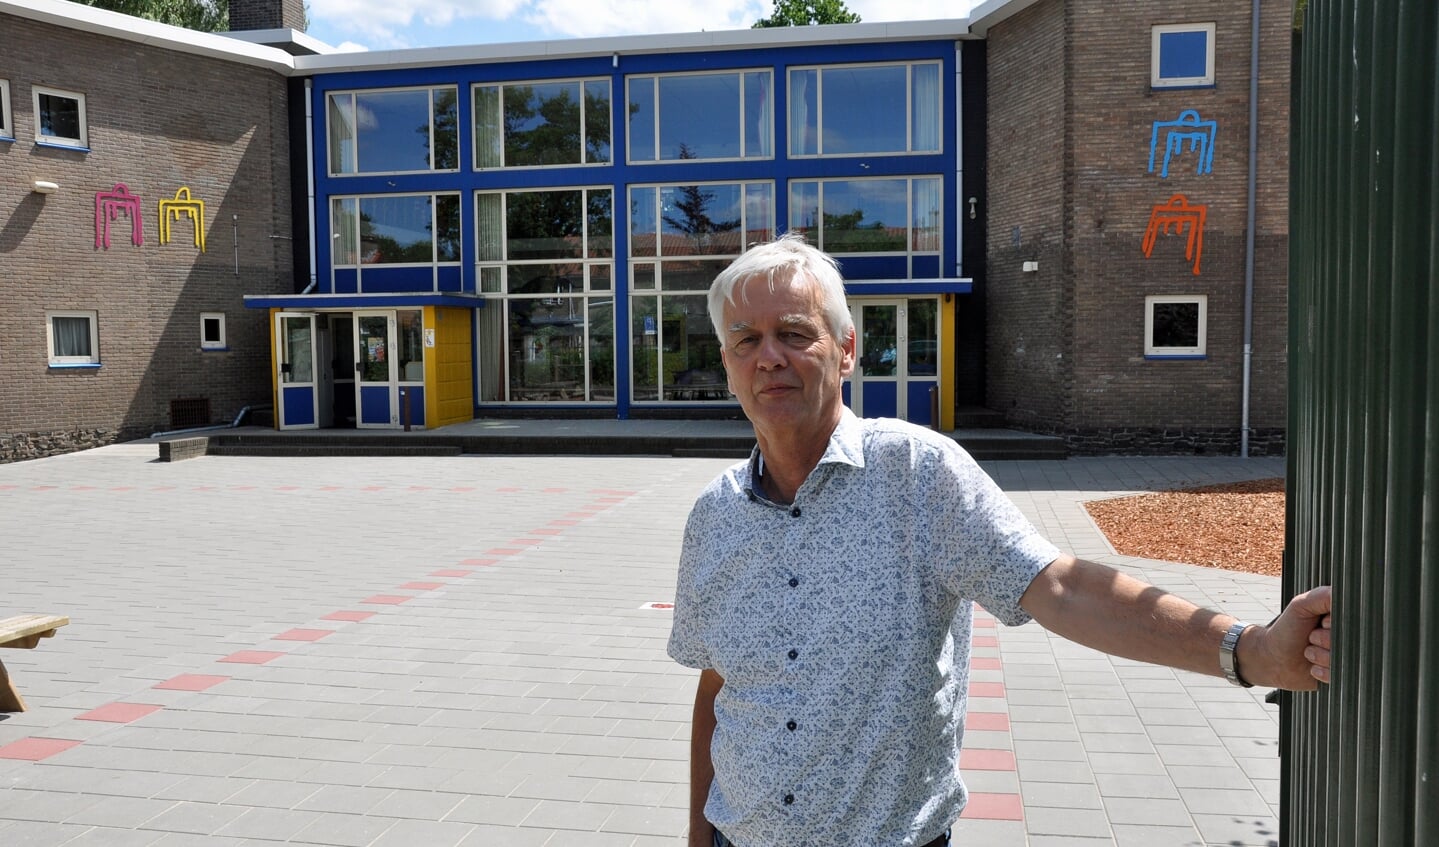 Jan Visscher: ,,Dit is een laagdrempelige school met een gemêleerde bevolking. Daar voel ik me toe aangetrokken."